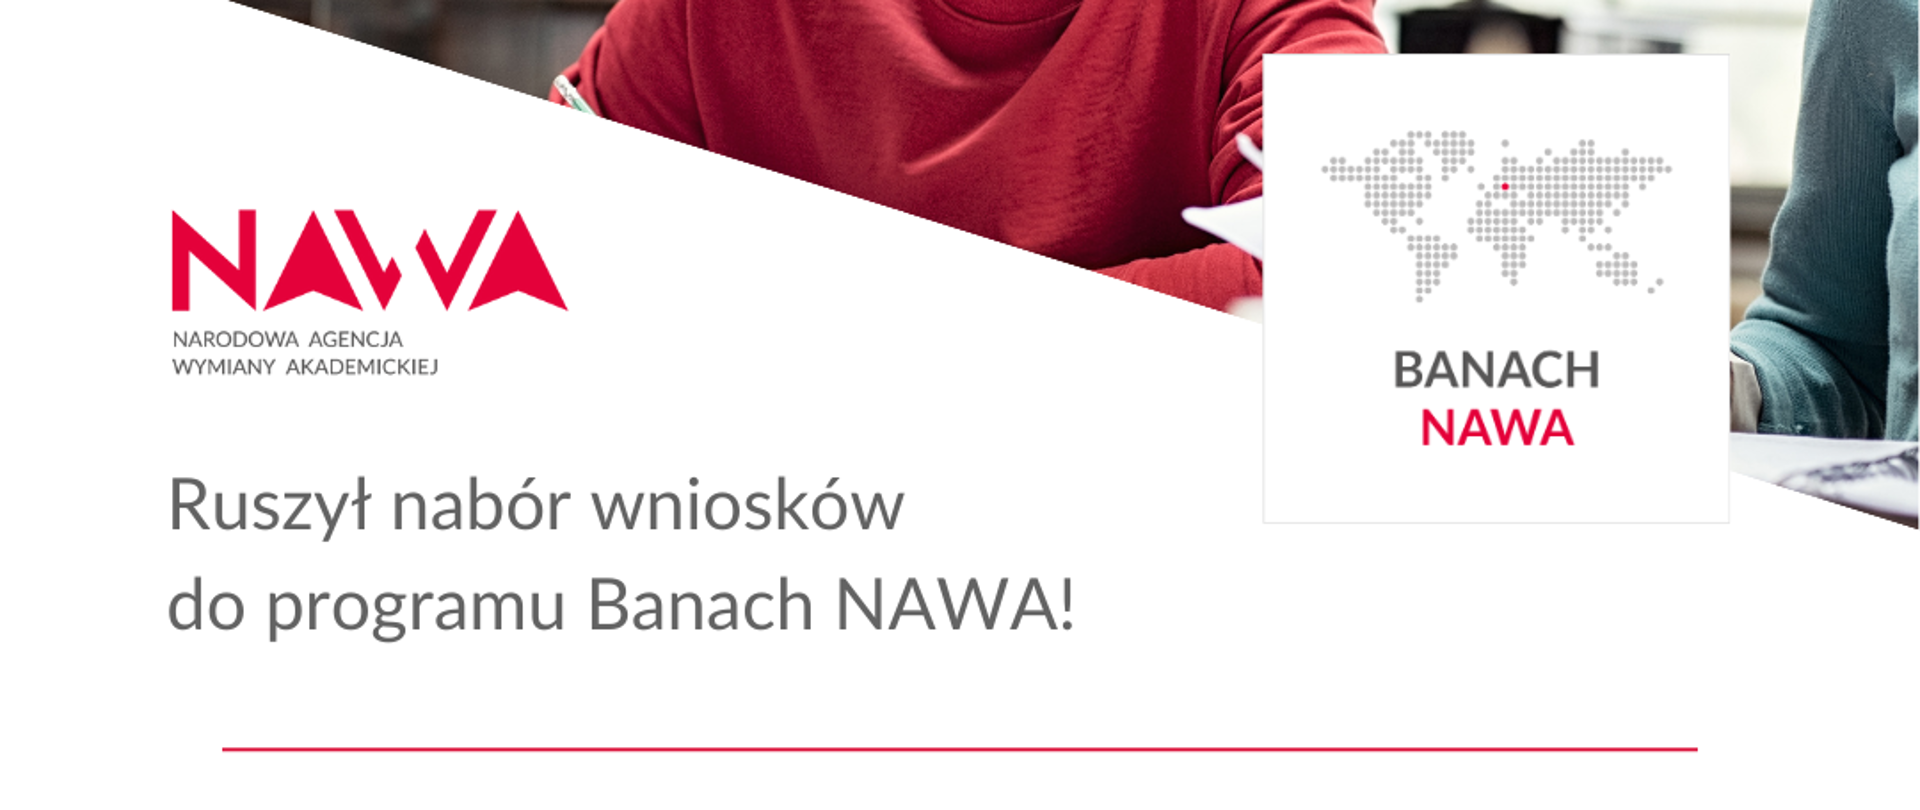 Ulotka reklamująca program Banach NAWA przedstawiająca ciemnoskórego mężczyznę, logotypy NAWA, MNiSW, MSZ i Polskiej pomocy.